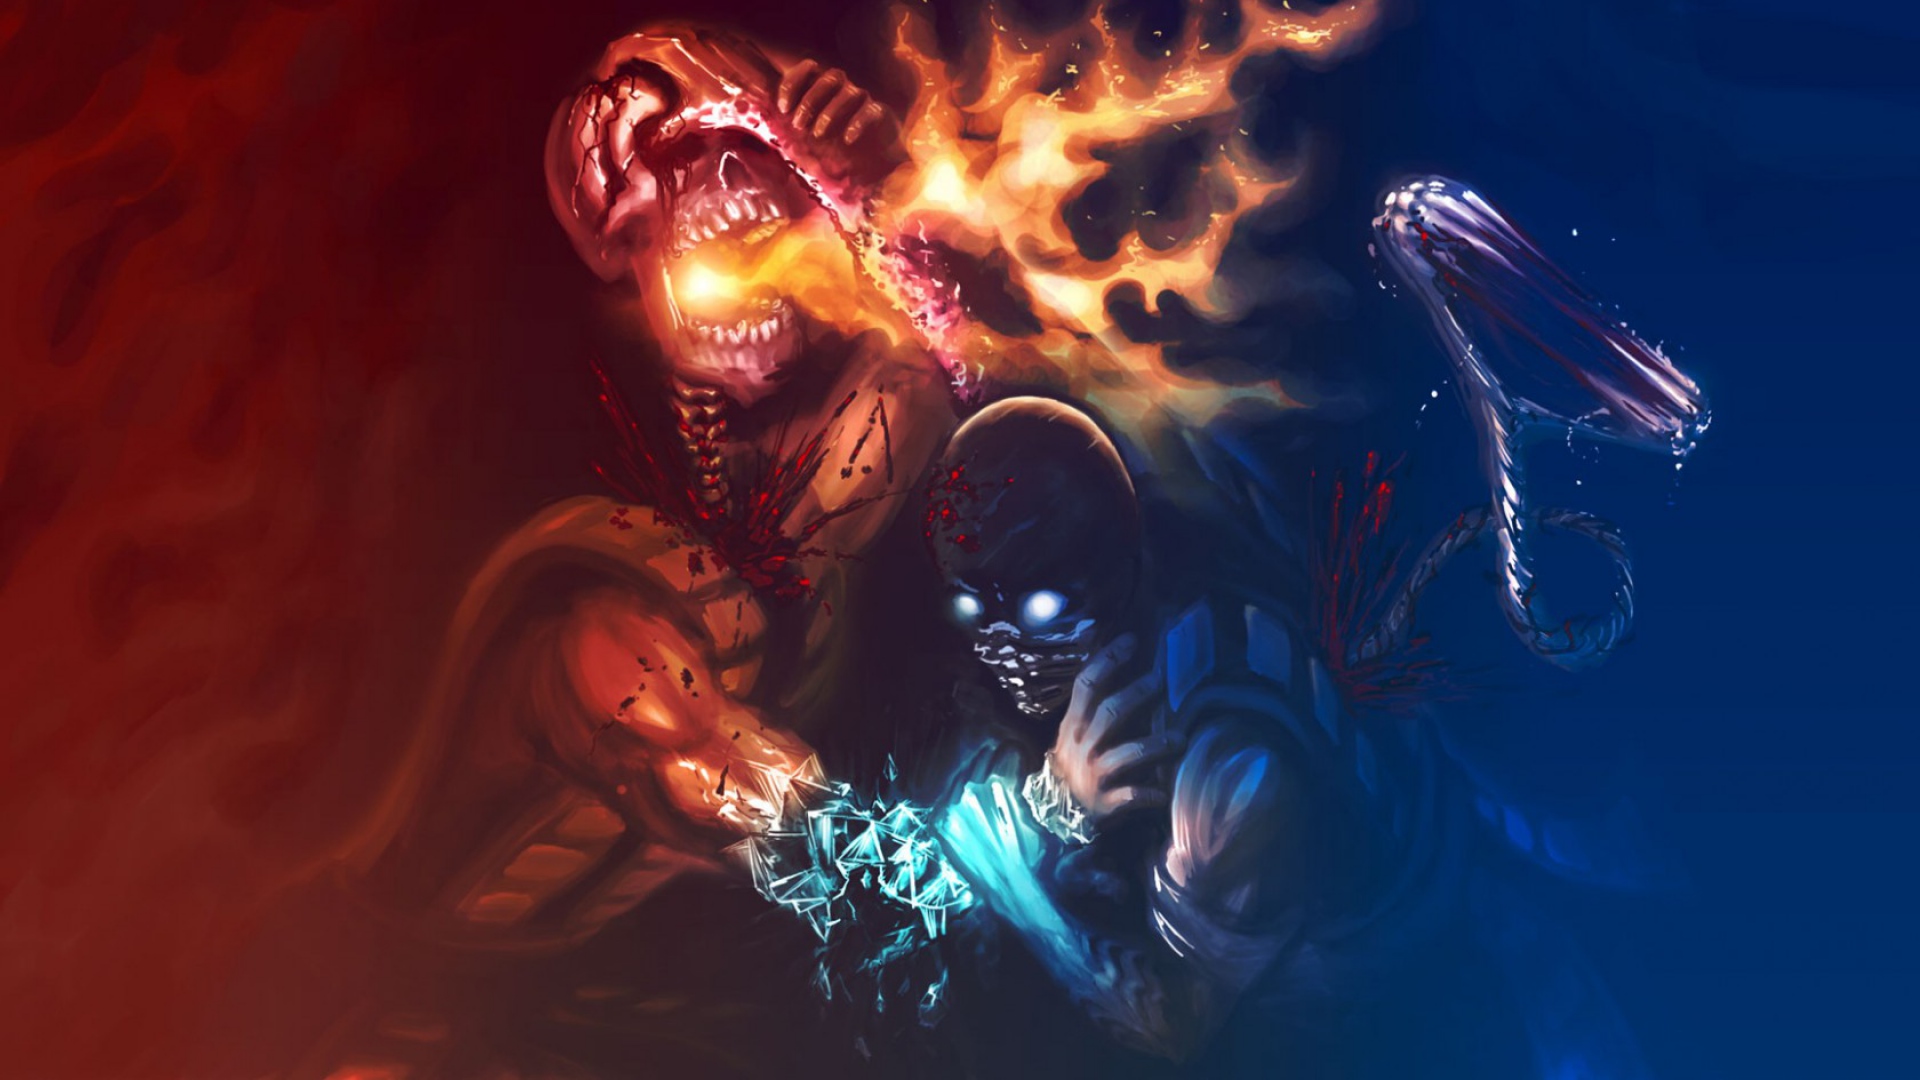 HD Wallpaper Background Id Px Mortal Kombat